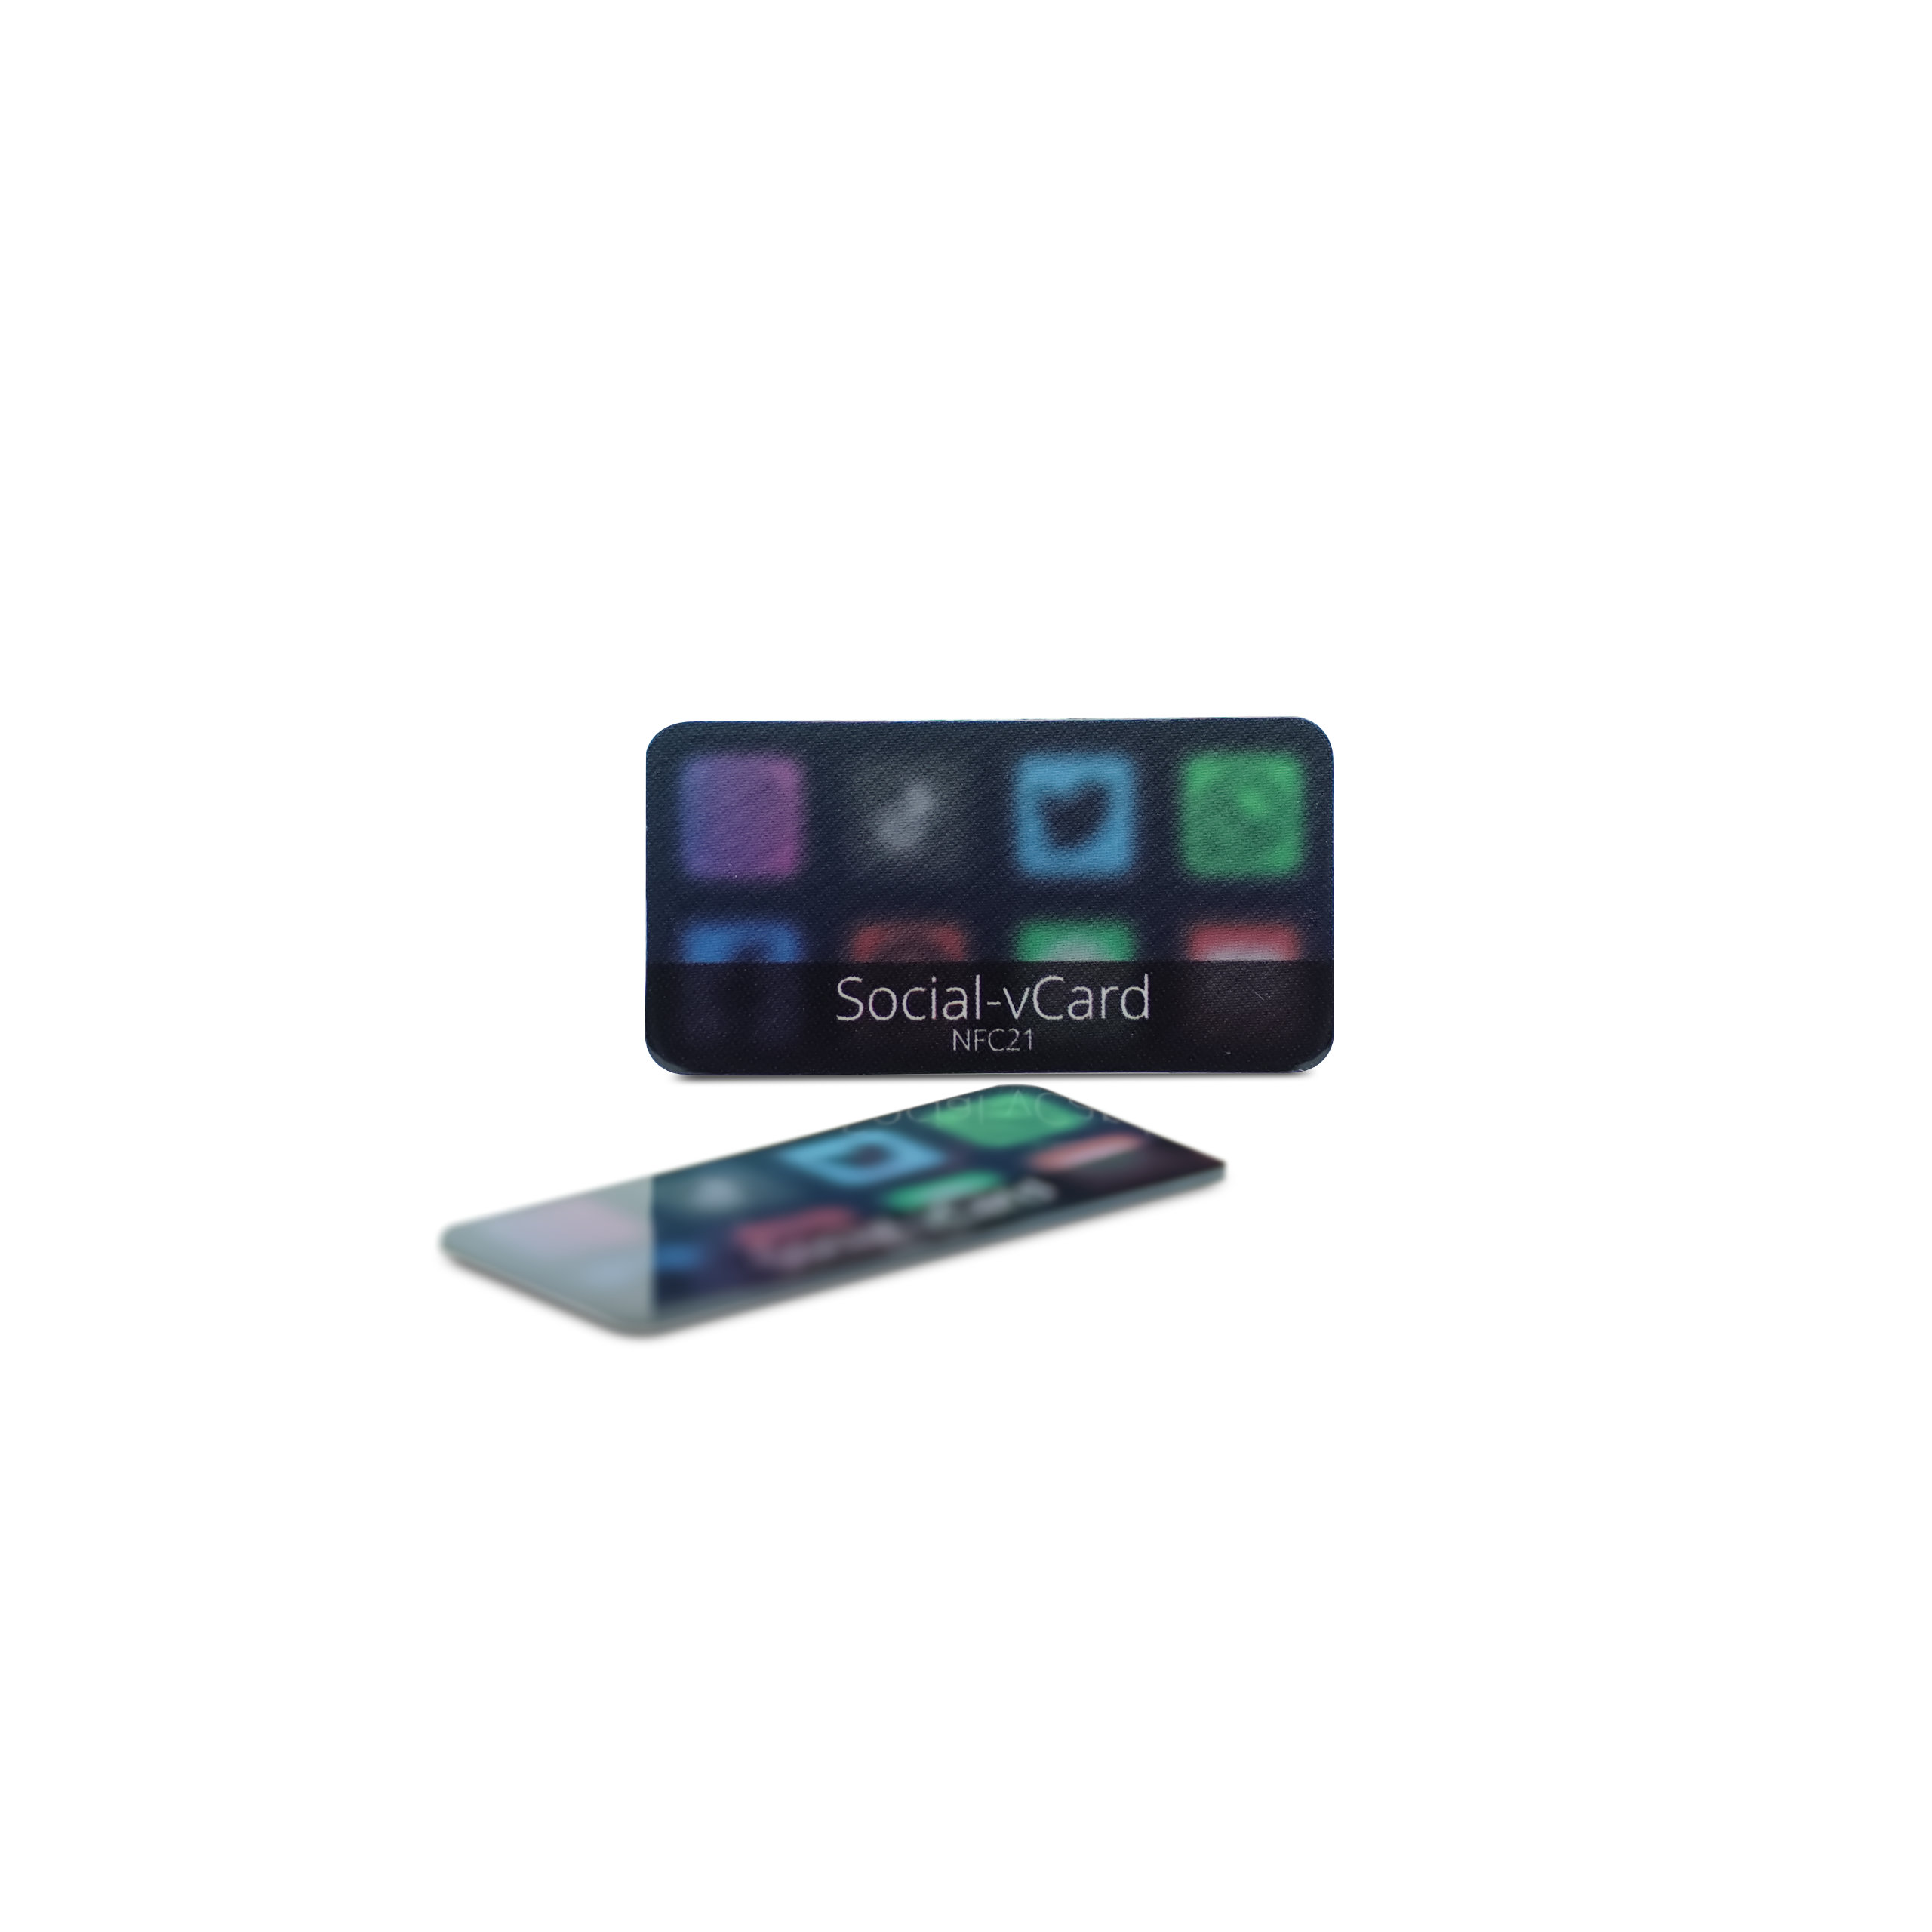 Social-vCard Dark - Digital social media sticker - PET - 35 x 18 mm - black